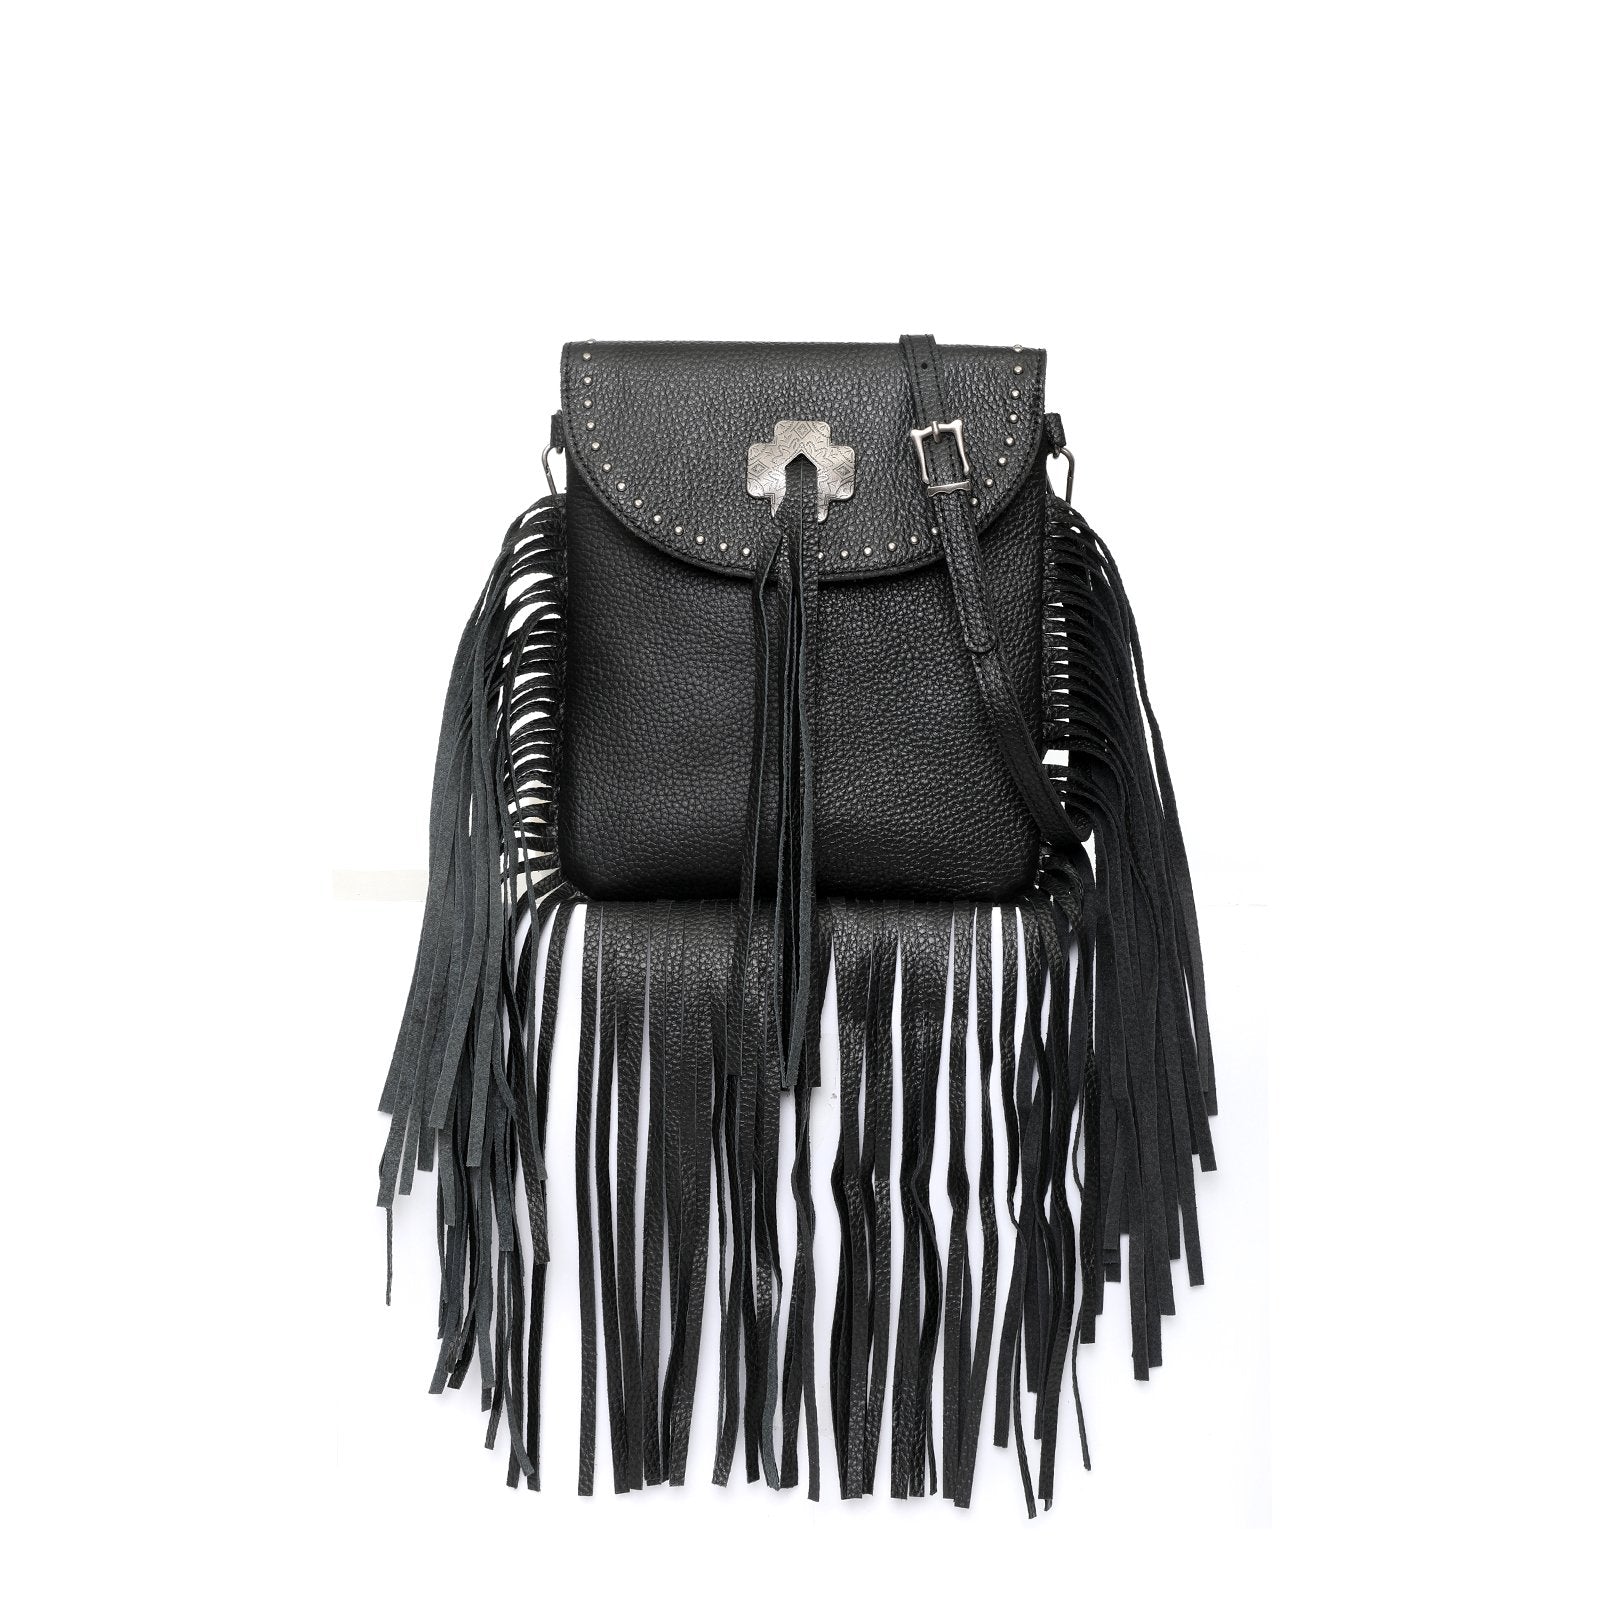 Black Fringe Bag Bohemian Leather Fringe Crossbody Western 